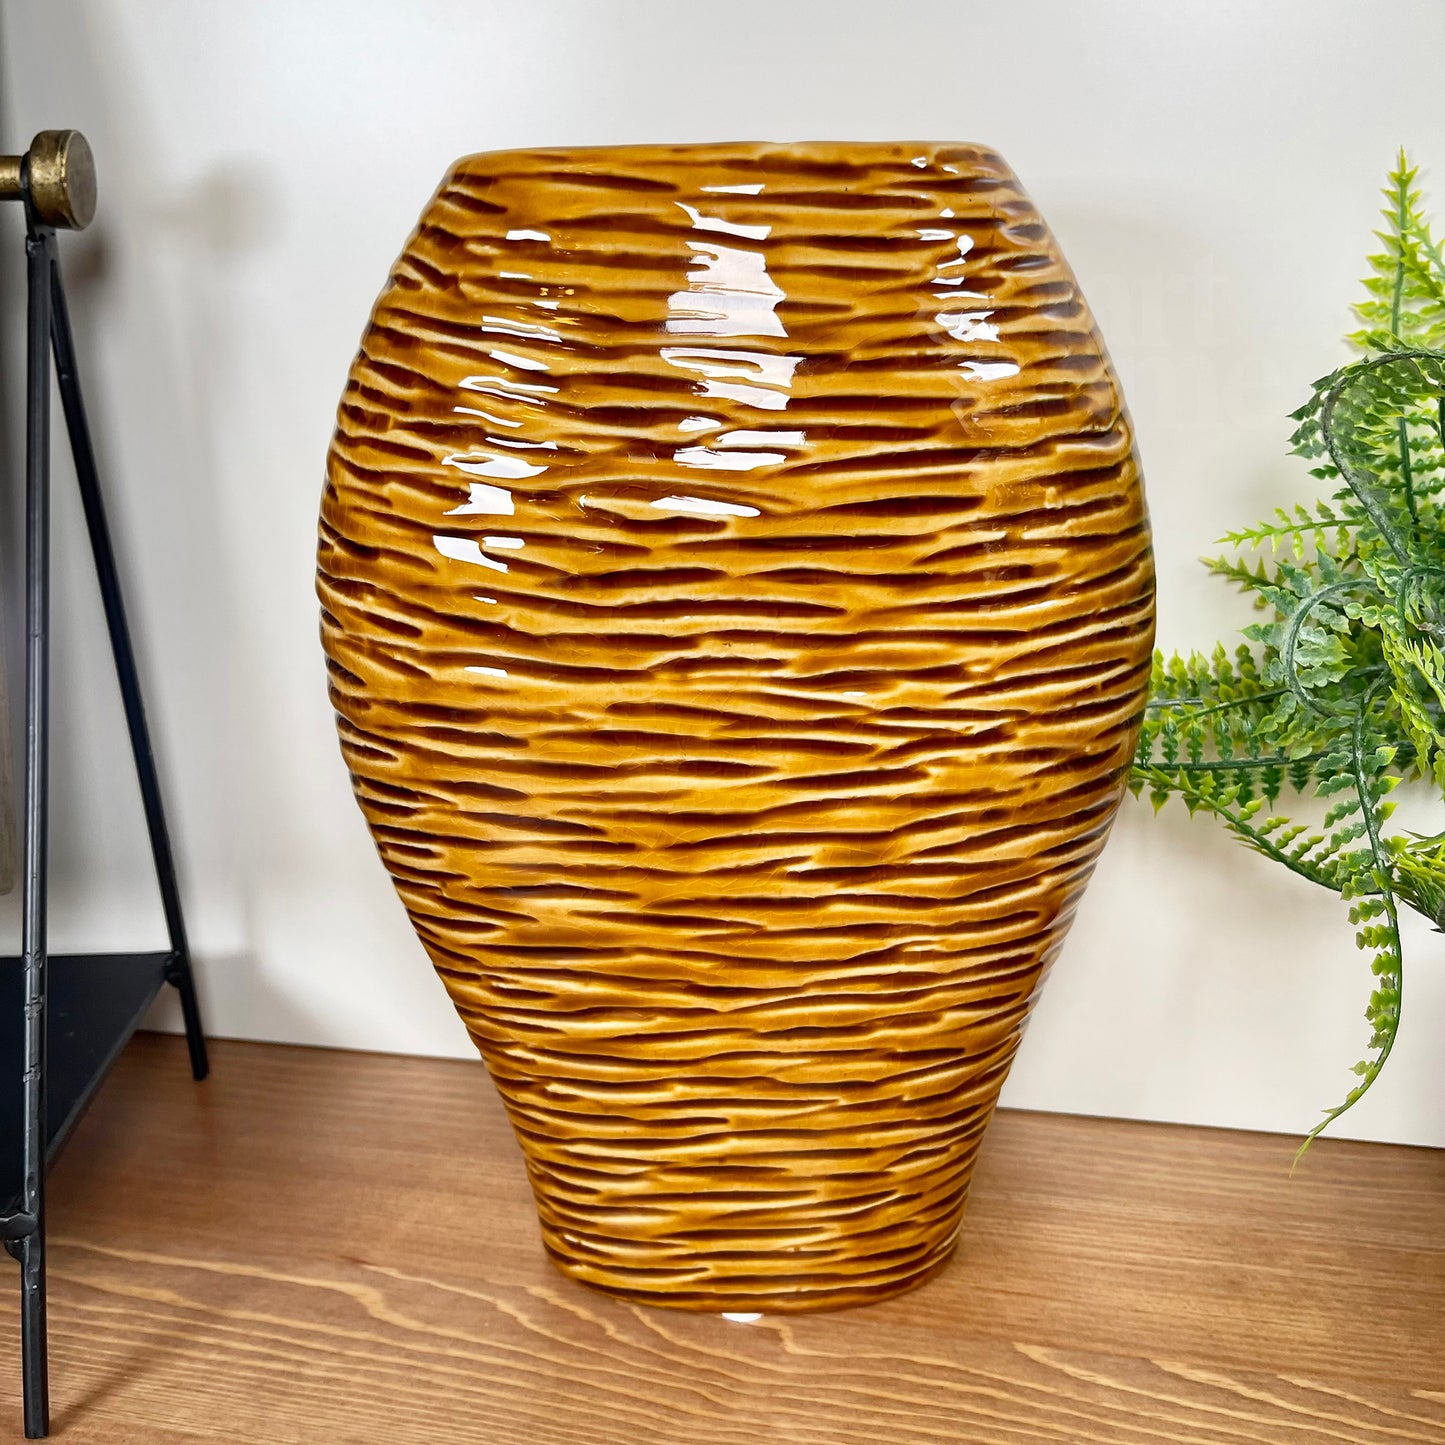 Goldene Bienenvase aus Keramik